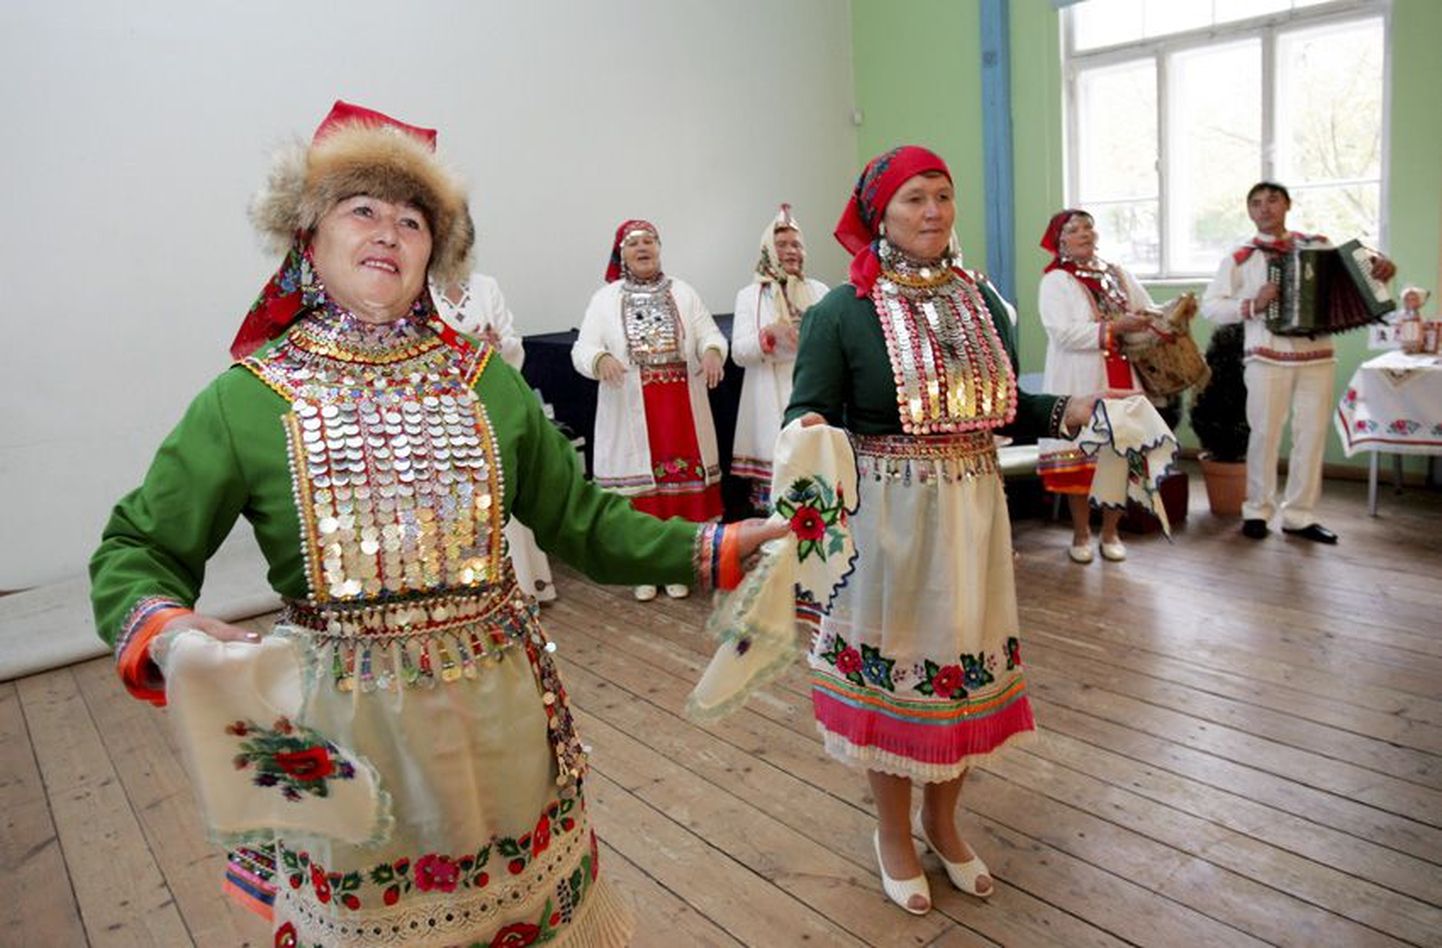 Lauldes ja tantsides avas Kuvan Kengež vaatajatele-kuulajatele maride hinge. Nagu selgus, on selles paljugi ühist eestlastega, ollakse ikkagi hõimurahvad.